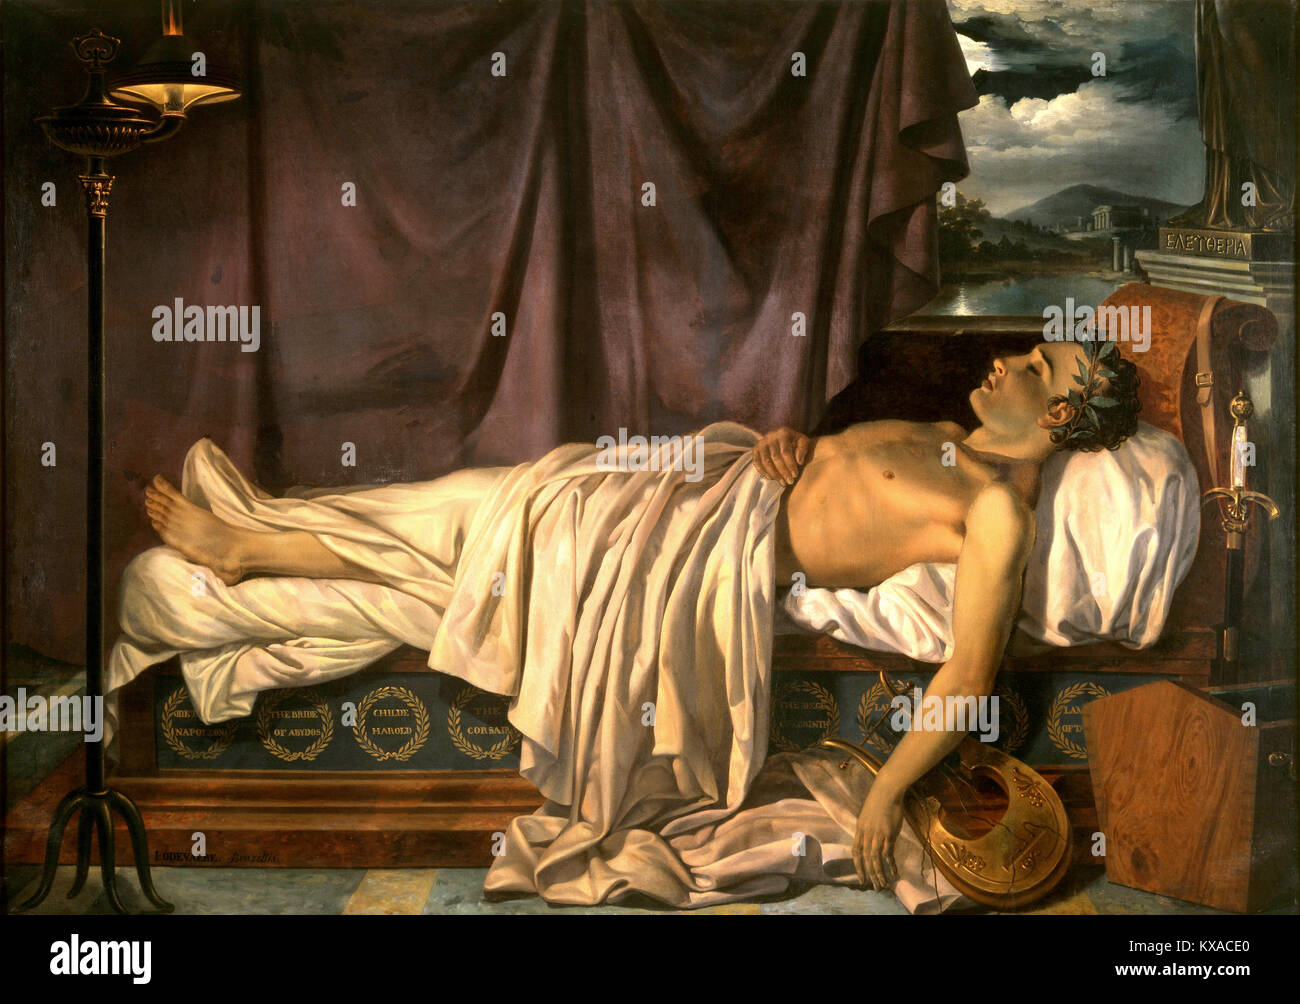 Lord Byron sur son lit de mort, George Gordon Byron, Lord Byron, était un poète anglais Banque D'Images